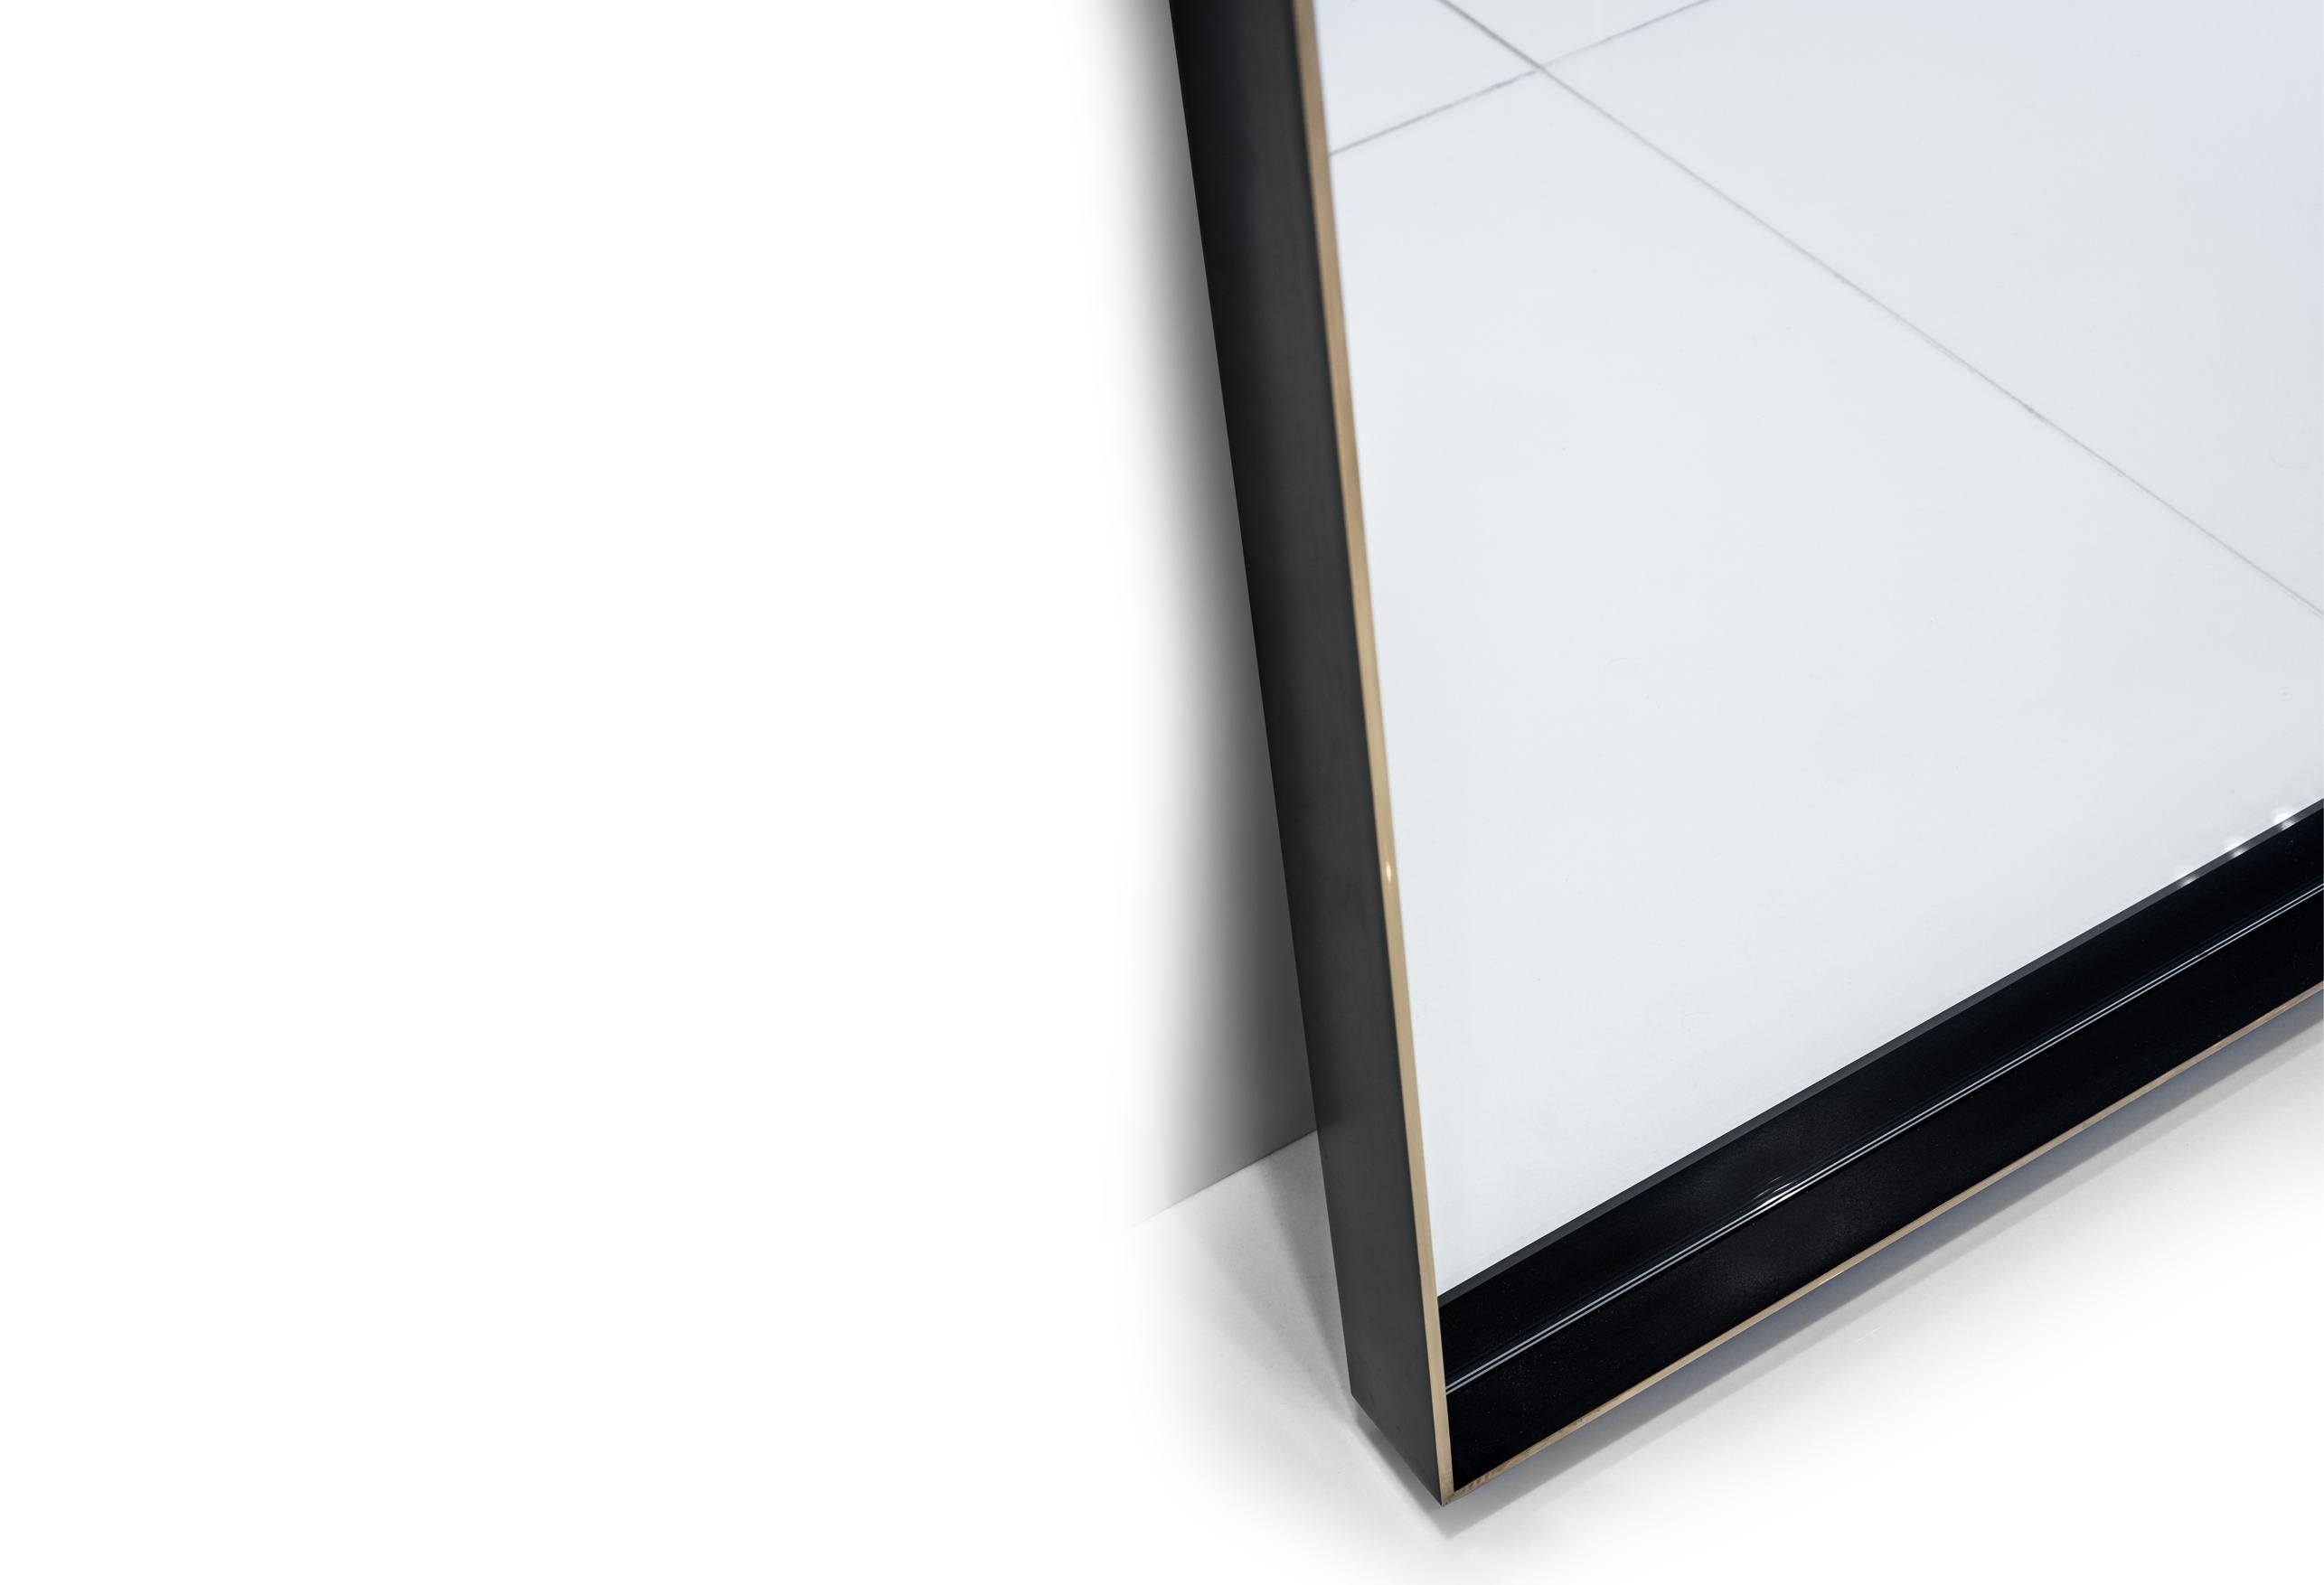 La pureté simple du miroir de sol Rone signifie qu'il s'associe magnifiquement avec n'importe quelle pièce dans n'importe quel environnement. 

Montrée avec un cadre en laiton massif avec des côtés patinés et des bords brunis.

Il s'agit d'un